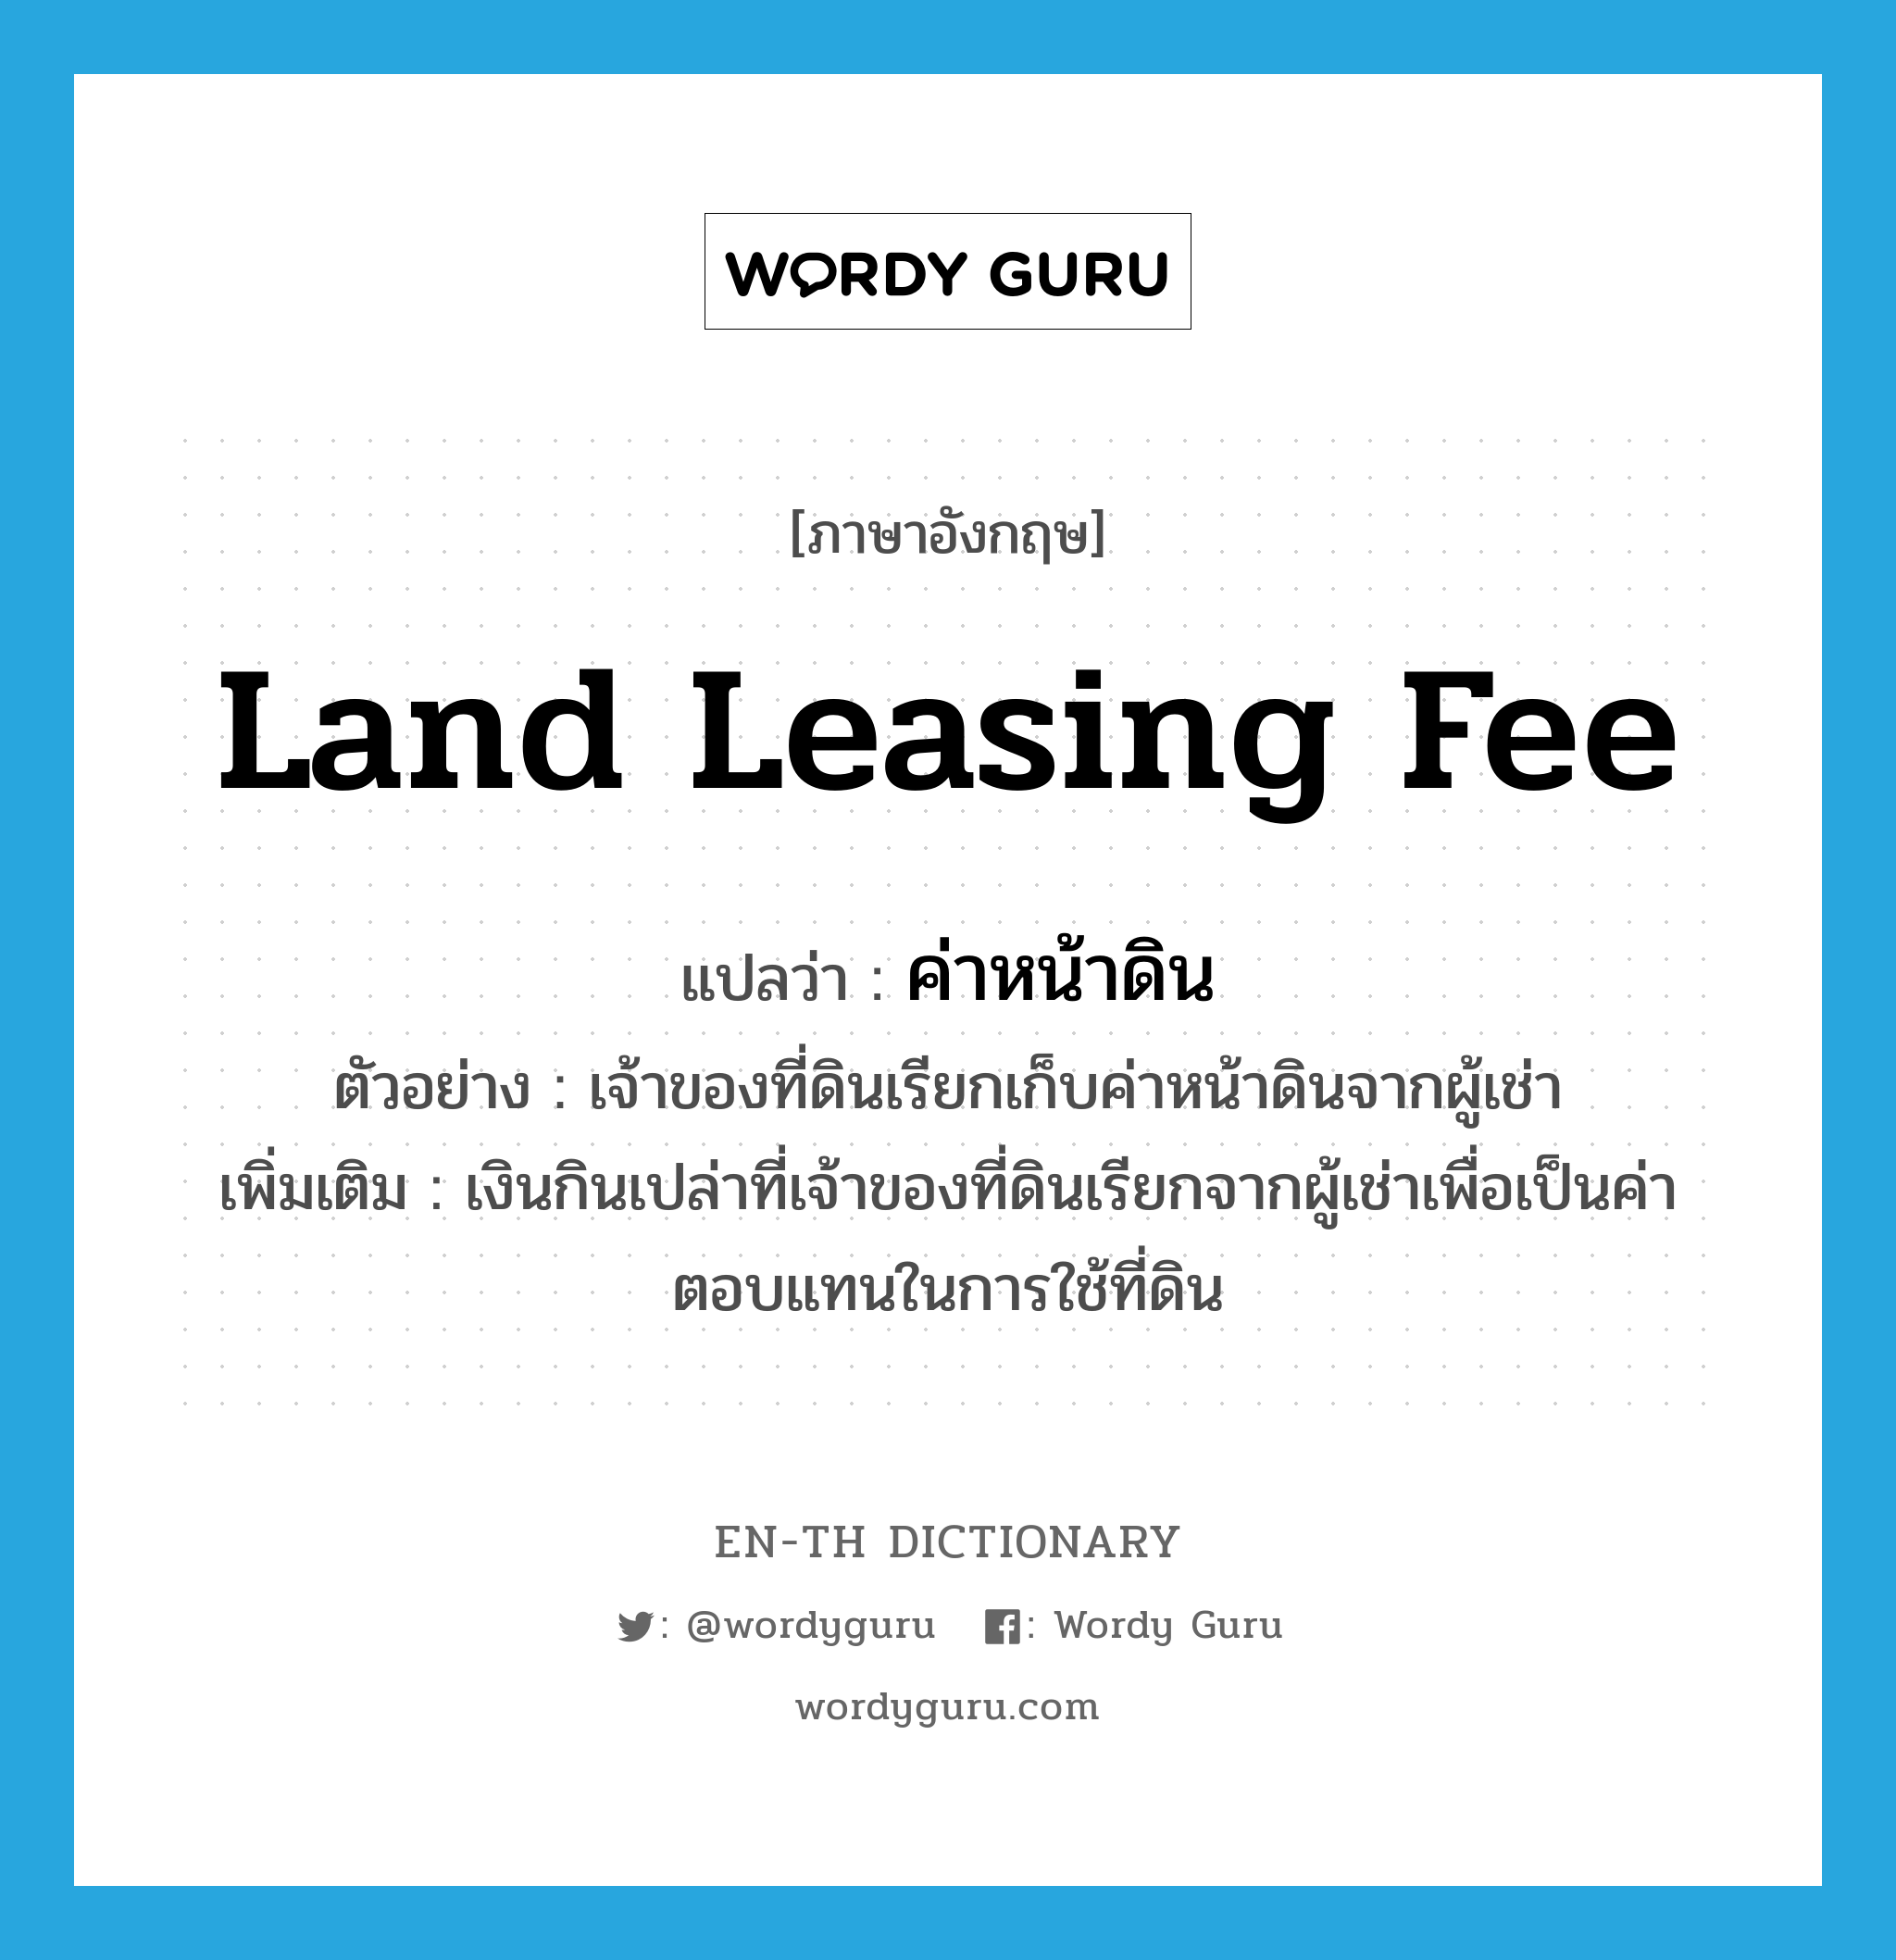 land leasing fee แปลว่า?, คำศัพท์ภาษาอังกฤษ land leasing fee แปลว่า ค่าหน้าดิน ประเภท N ตัวอย่าง เจ้าของที่ดินเรียกเก็บค่าหน้าดินจากผู้เช่า เพิ่มเติม เงินกินเปล่าที่เจ้าของที่ดินเรียกจากผู้เช่าเพื่อเป็นค่าตอบแทนในการใช้ที่ดิน หมวด N